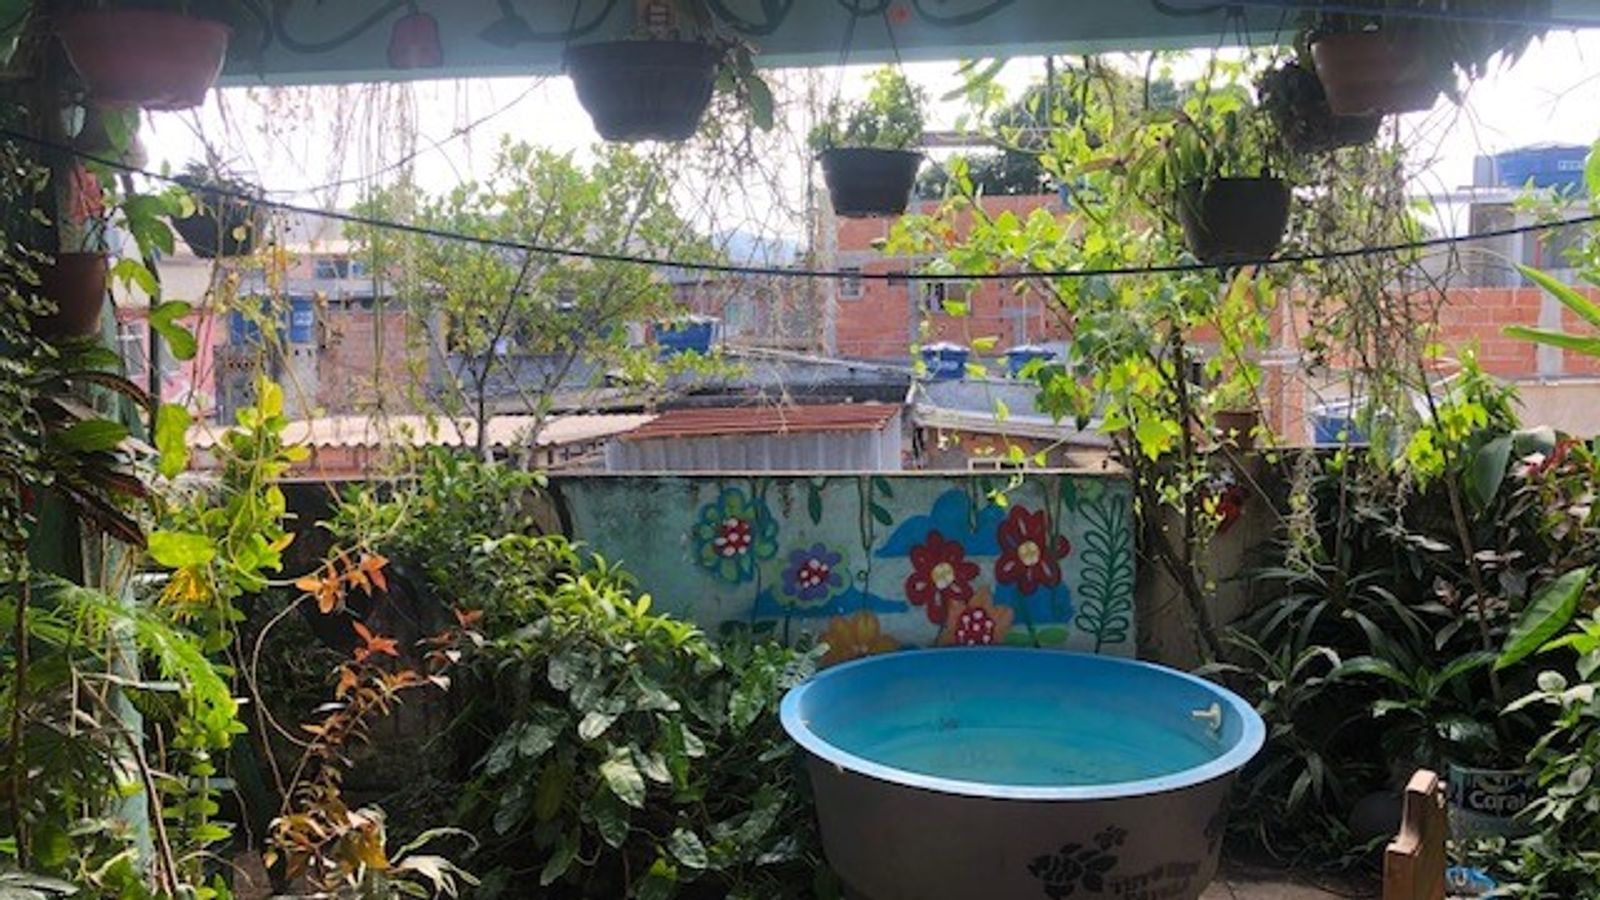 Perubahan iklim: Brasil mengubah atap menjadi surga tropis dalam memerangi pemanasan global |  Berita Dunia